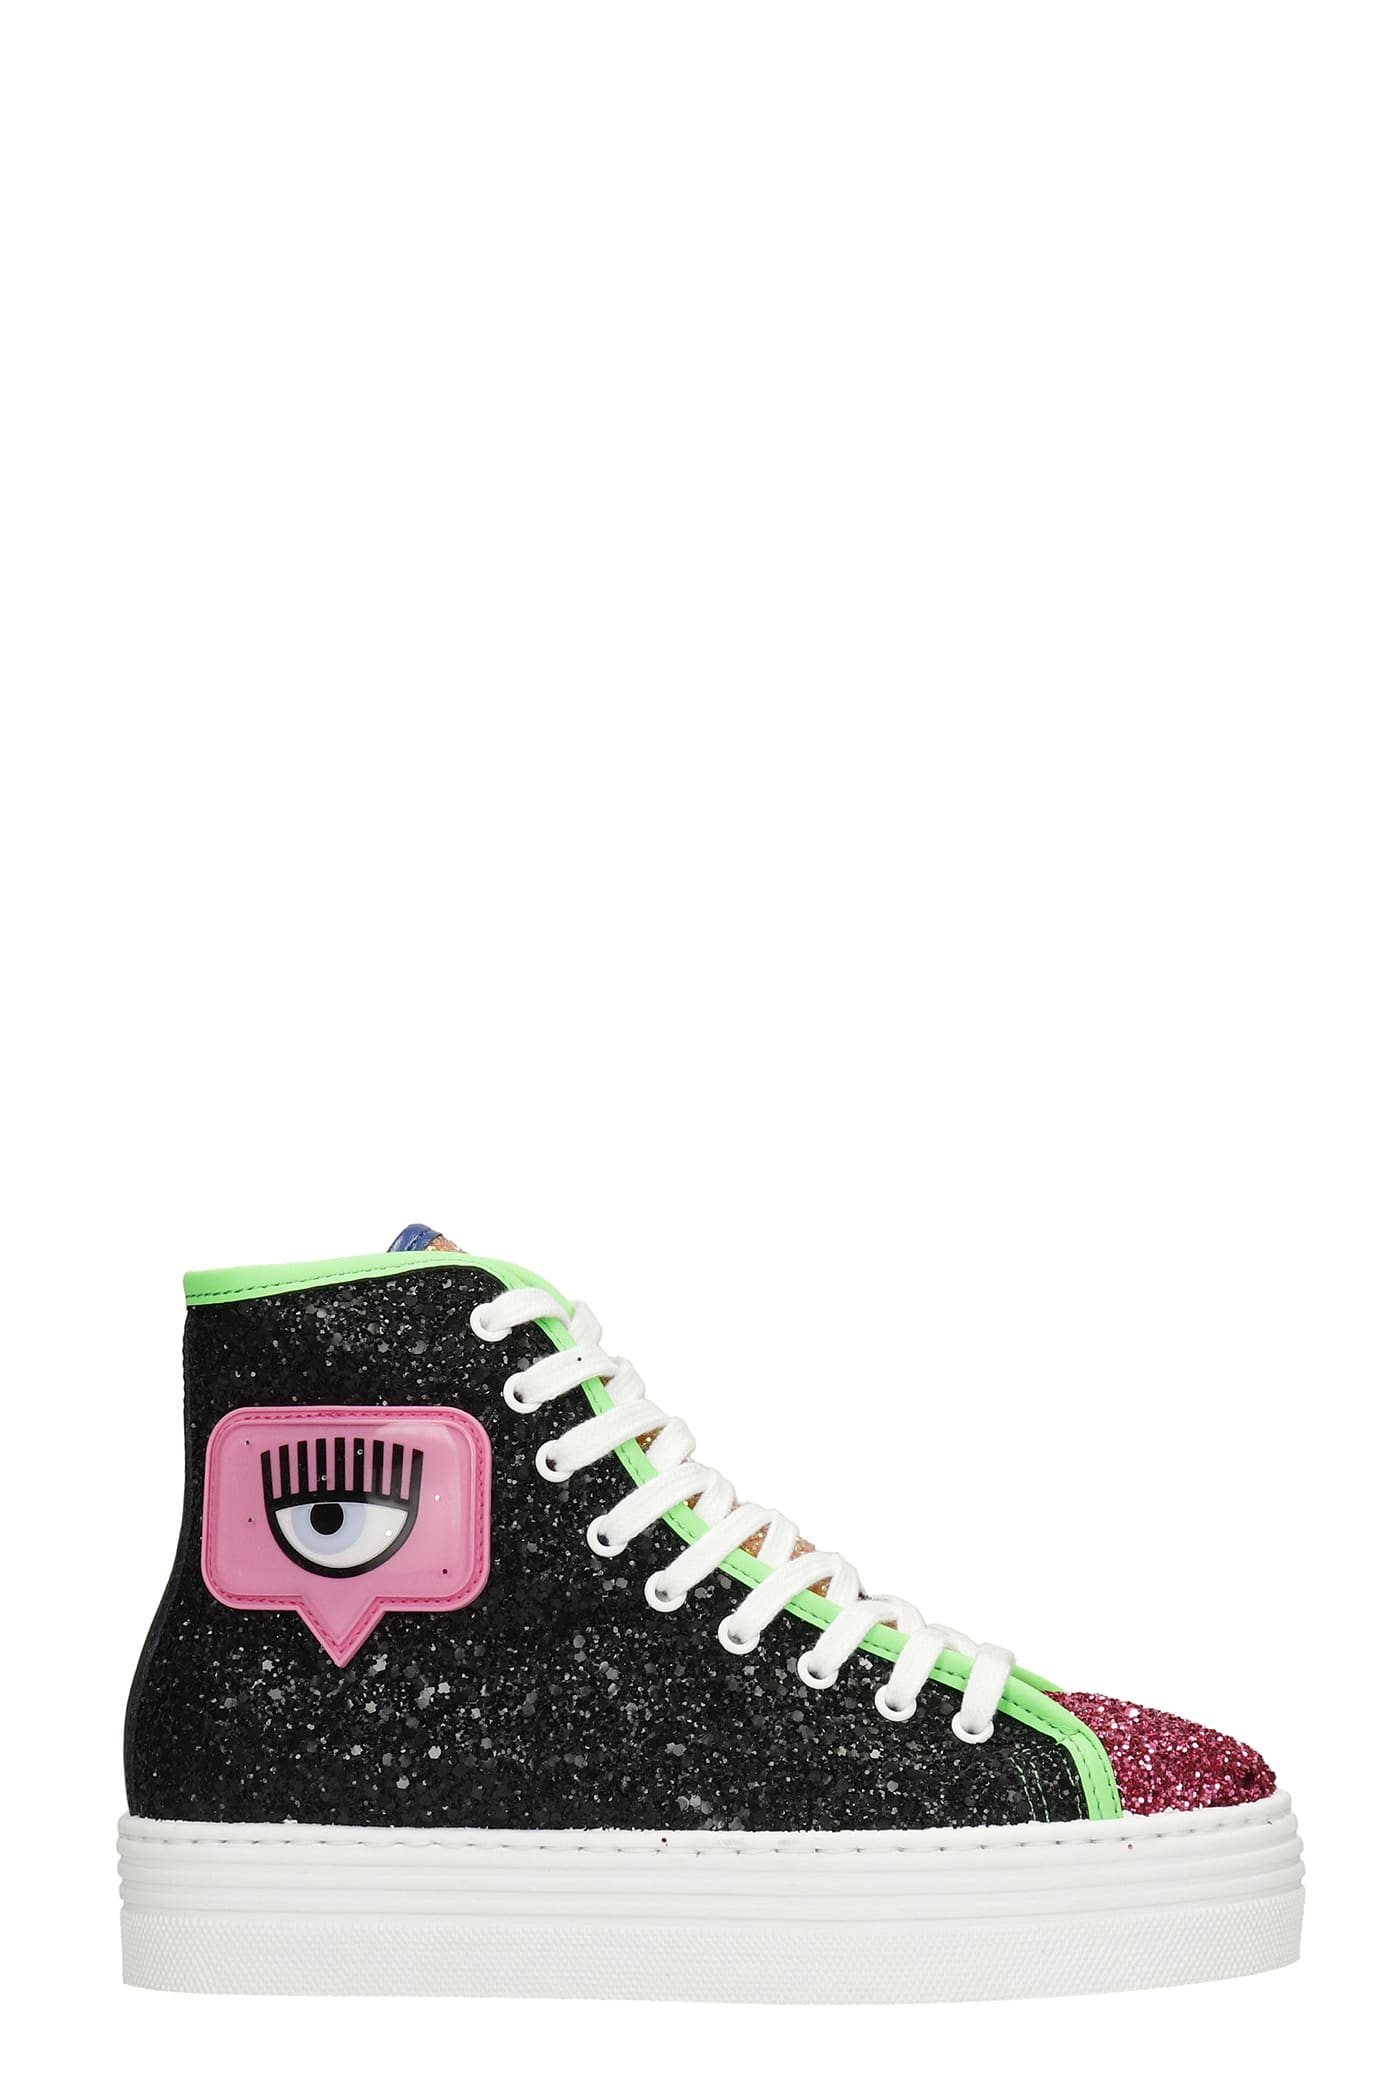 Chiara Ferragni Sneakers In Multicolor Glitter